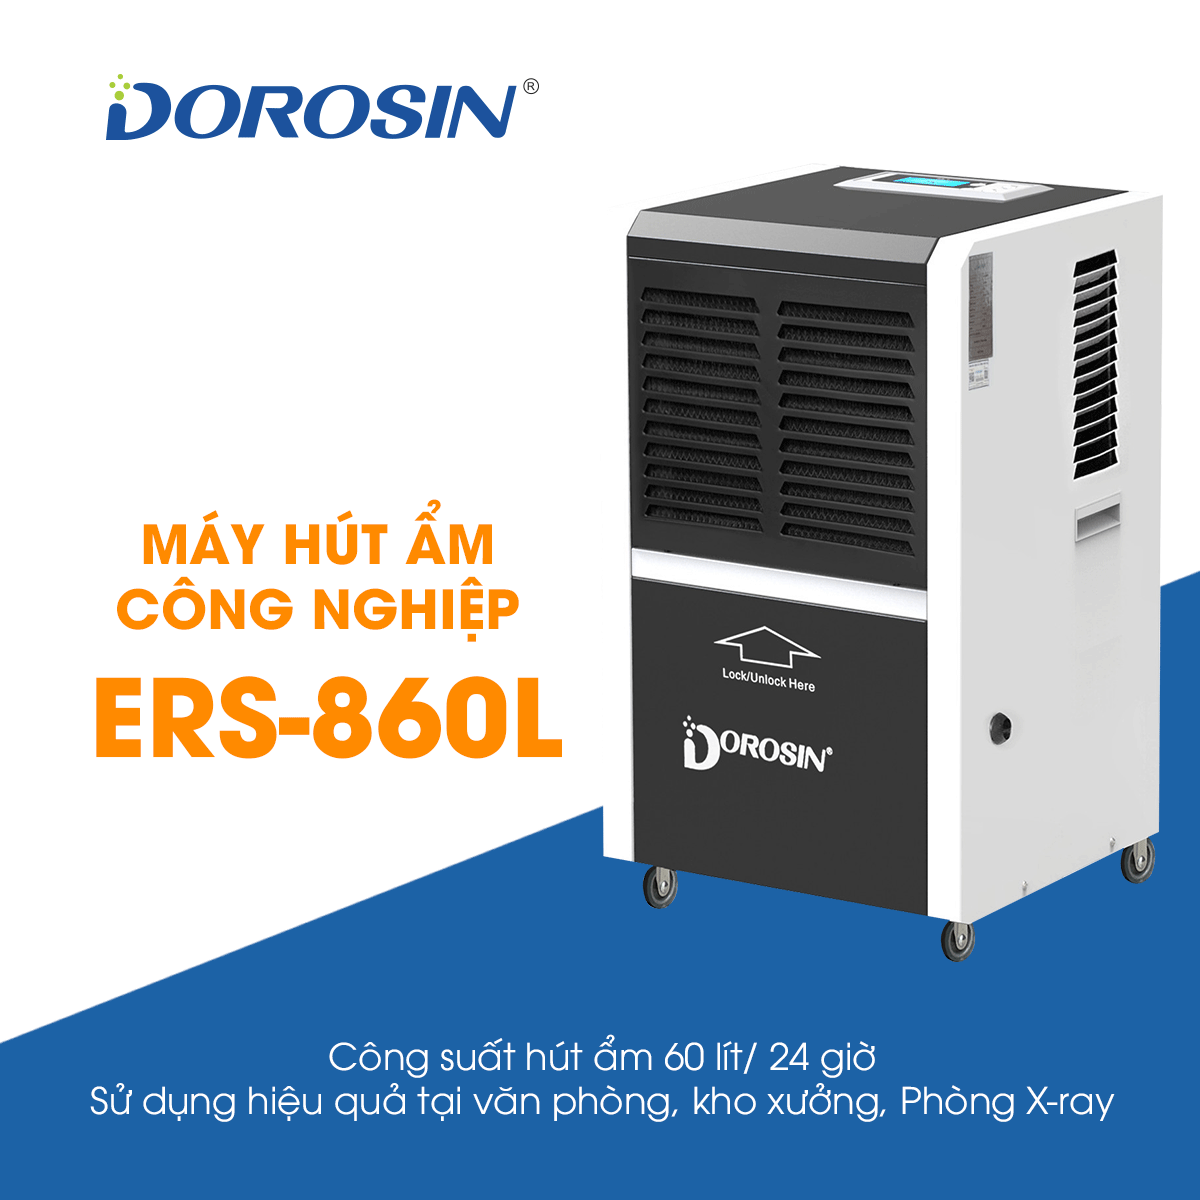 Máy hút ẩm công nghiệp Dorosin Airko - diện tích dùng 80-120m2 - công suất 60 lít/24 giờ - dùng cho nhà xưởng, phòng y tế - Hàng nhập khẩu chính hãng